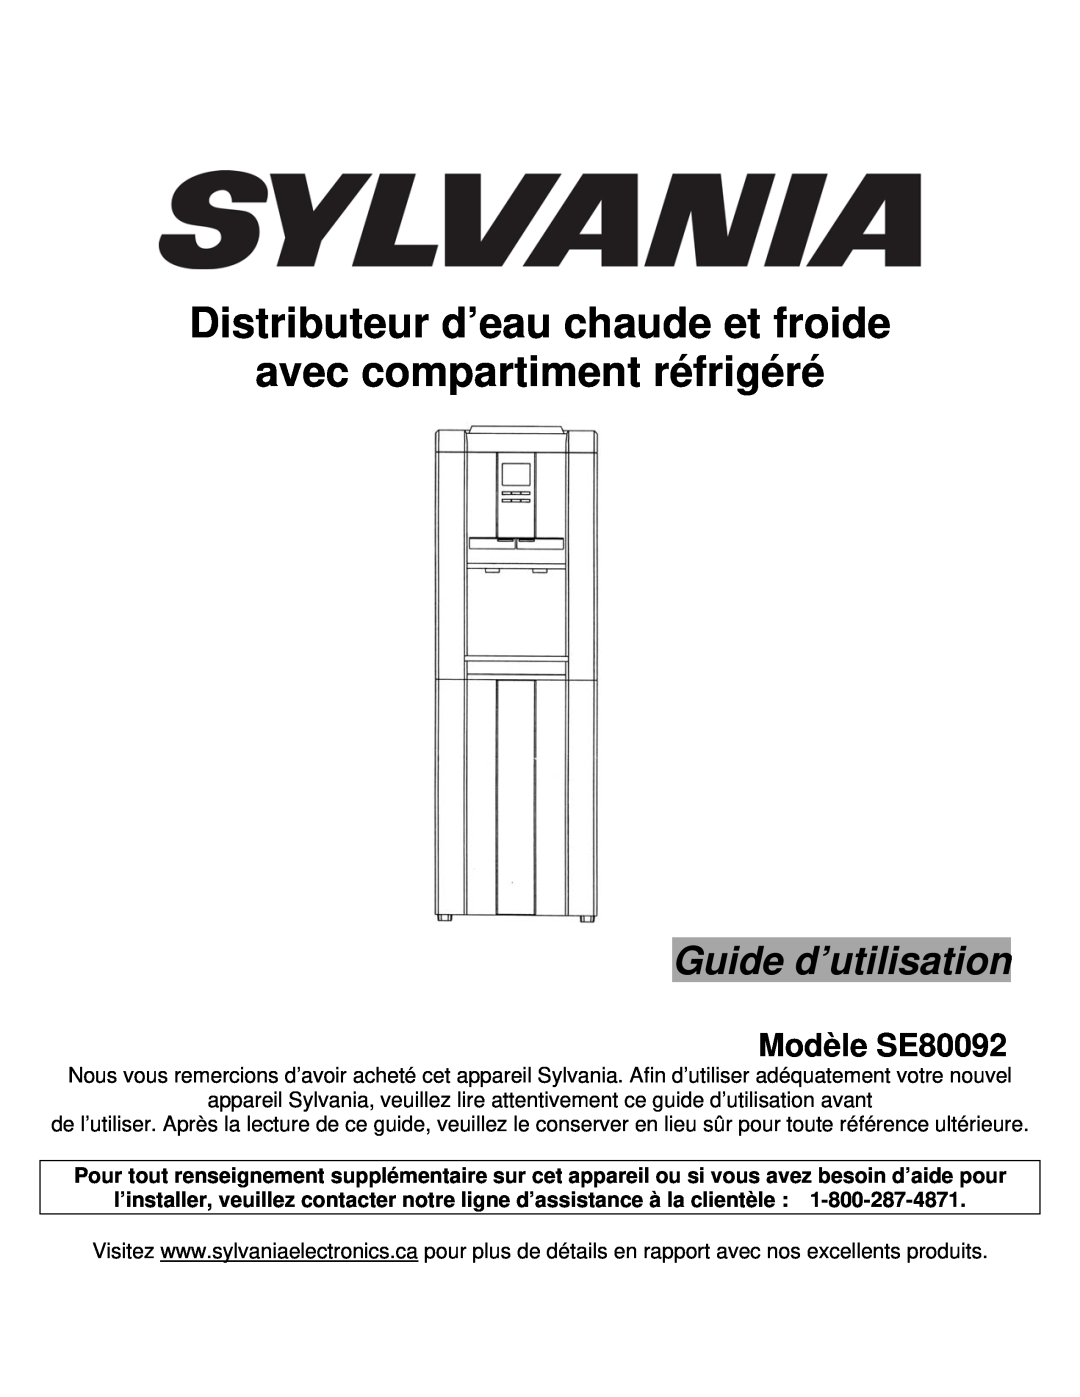 Sylvania Guide d’utilisation, Modèle SE80092, Distributeur d’eau chaude et froide, avec compartiment réfrigéré 